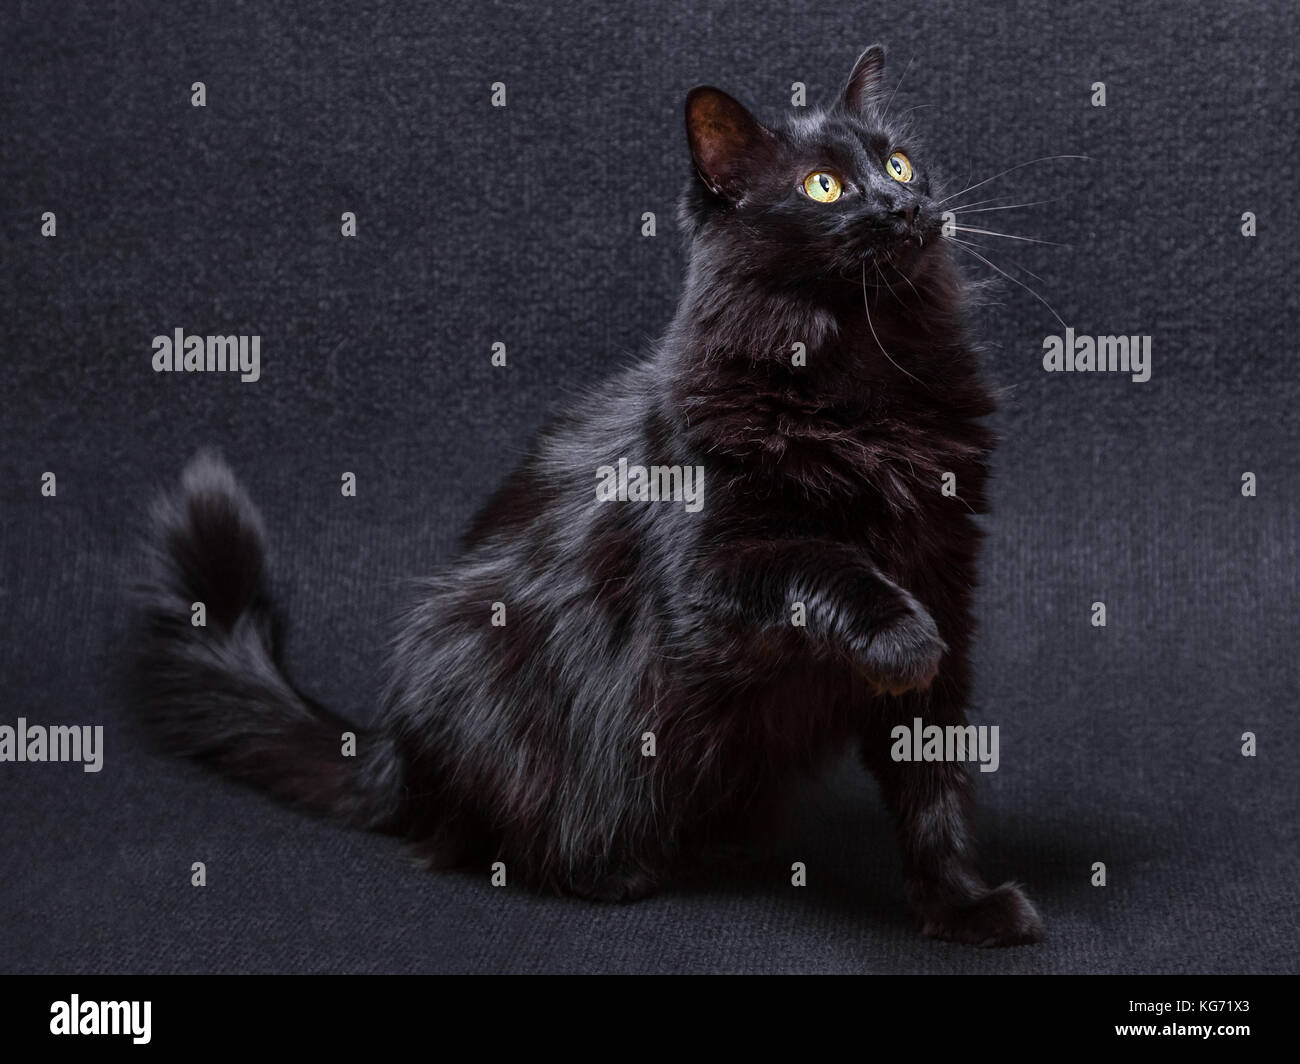 Enjoué et curieux chat noir sur un fond sombre. s'asseoir et à une patte relevée sur le point de balayer, gifle ou grève. Les cheveux longs Angora turc Banque D'Images